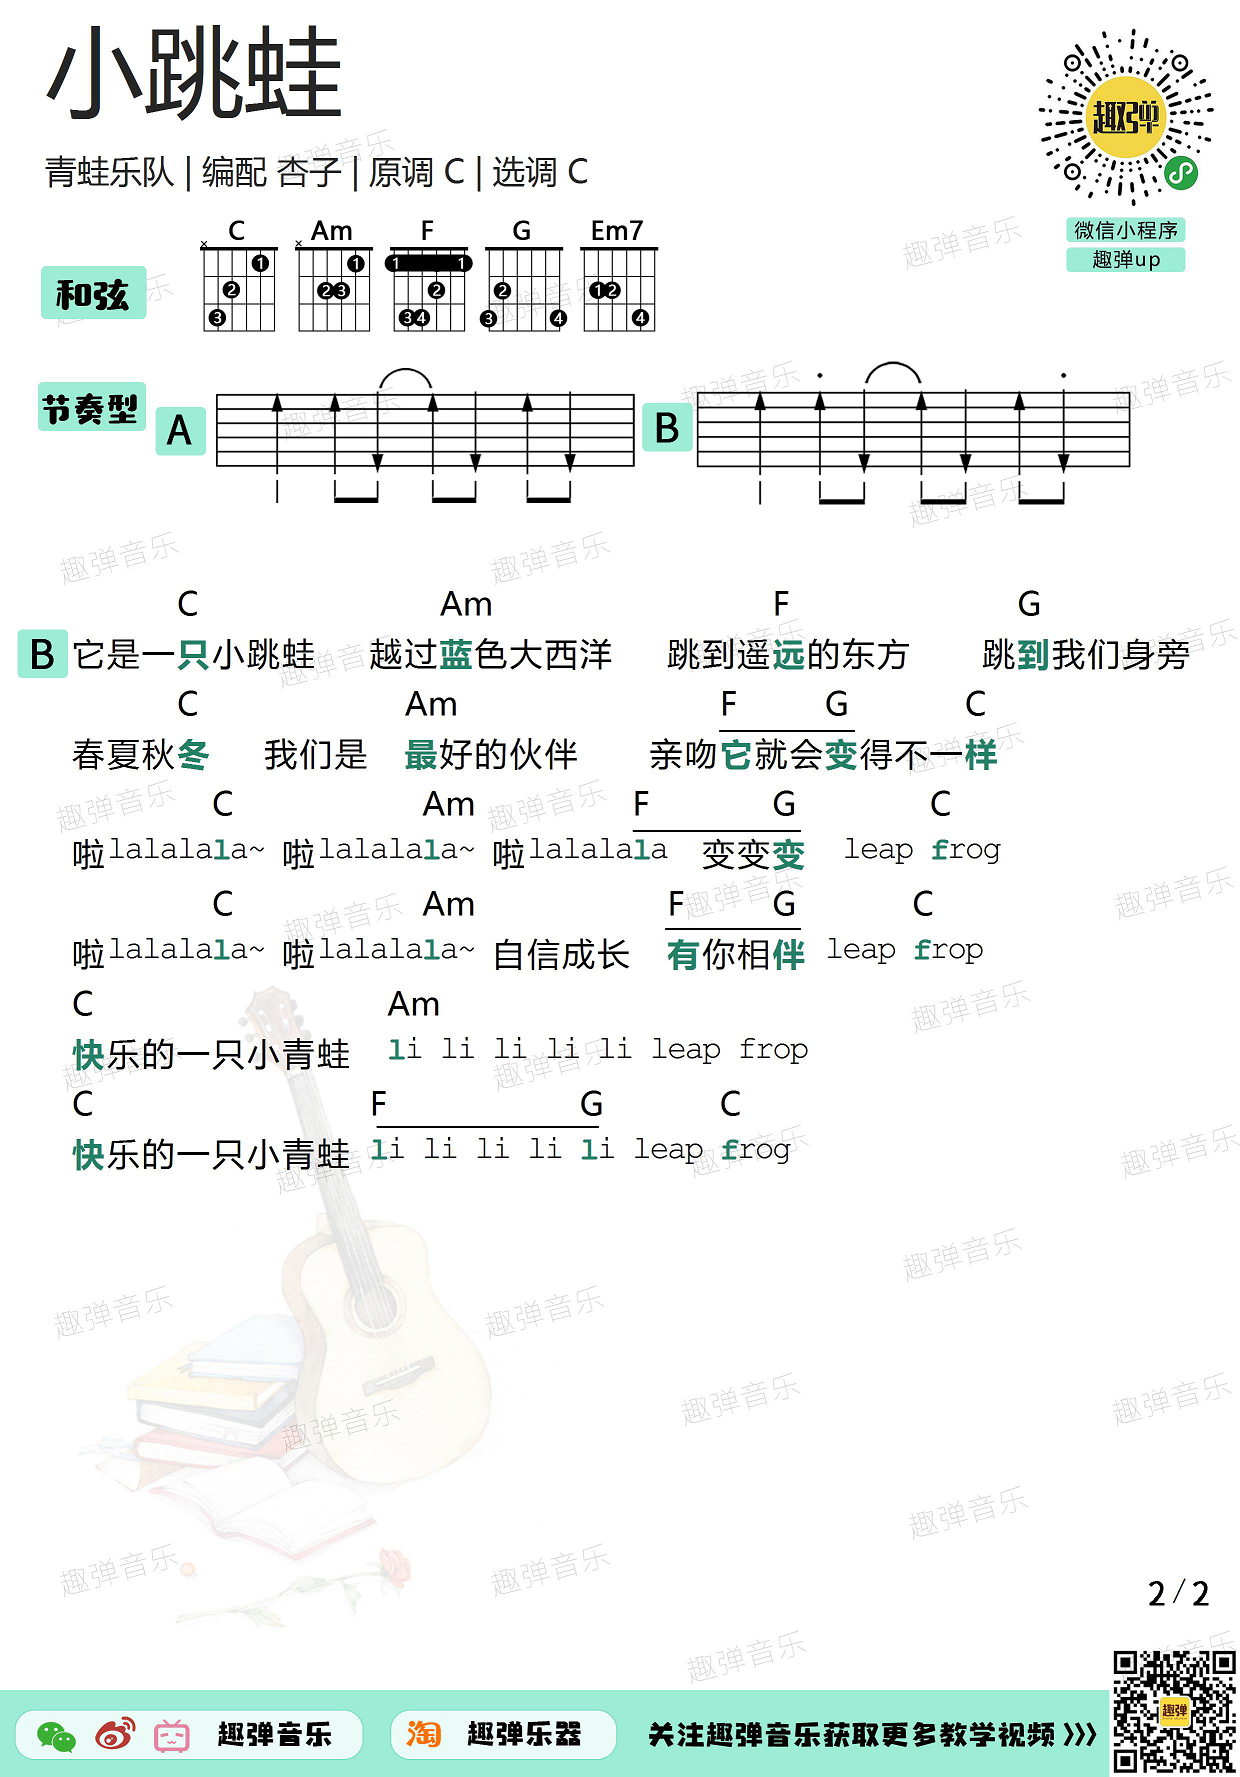 青蛙乐队《小跳蛙》吉他谱(C调)-Guitar Music Score